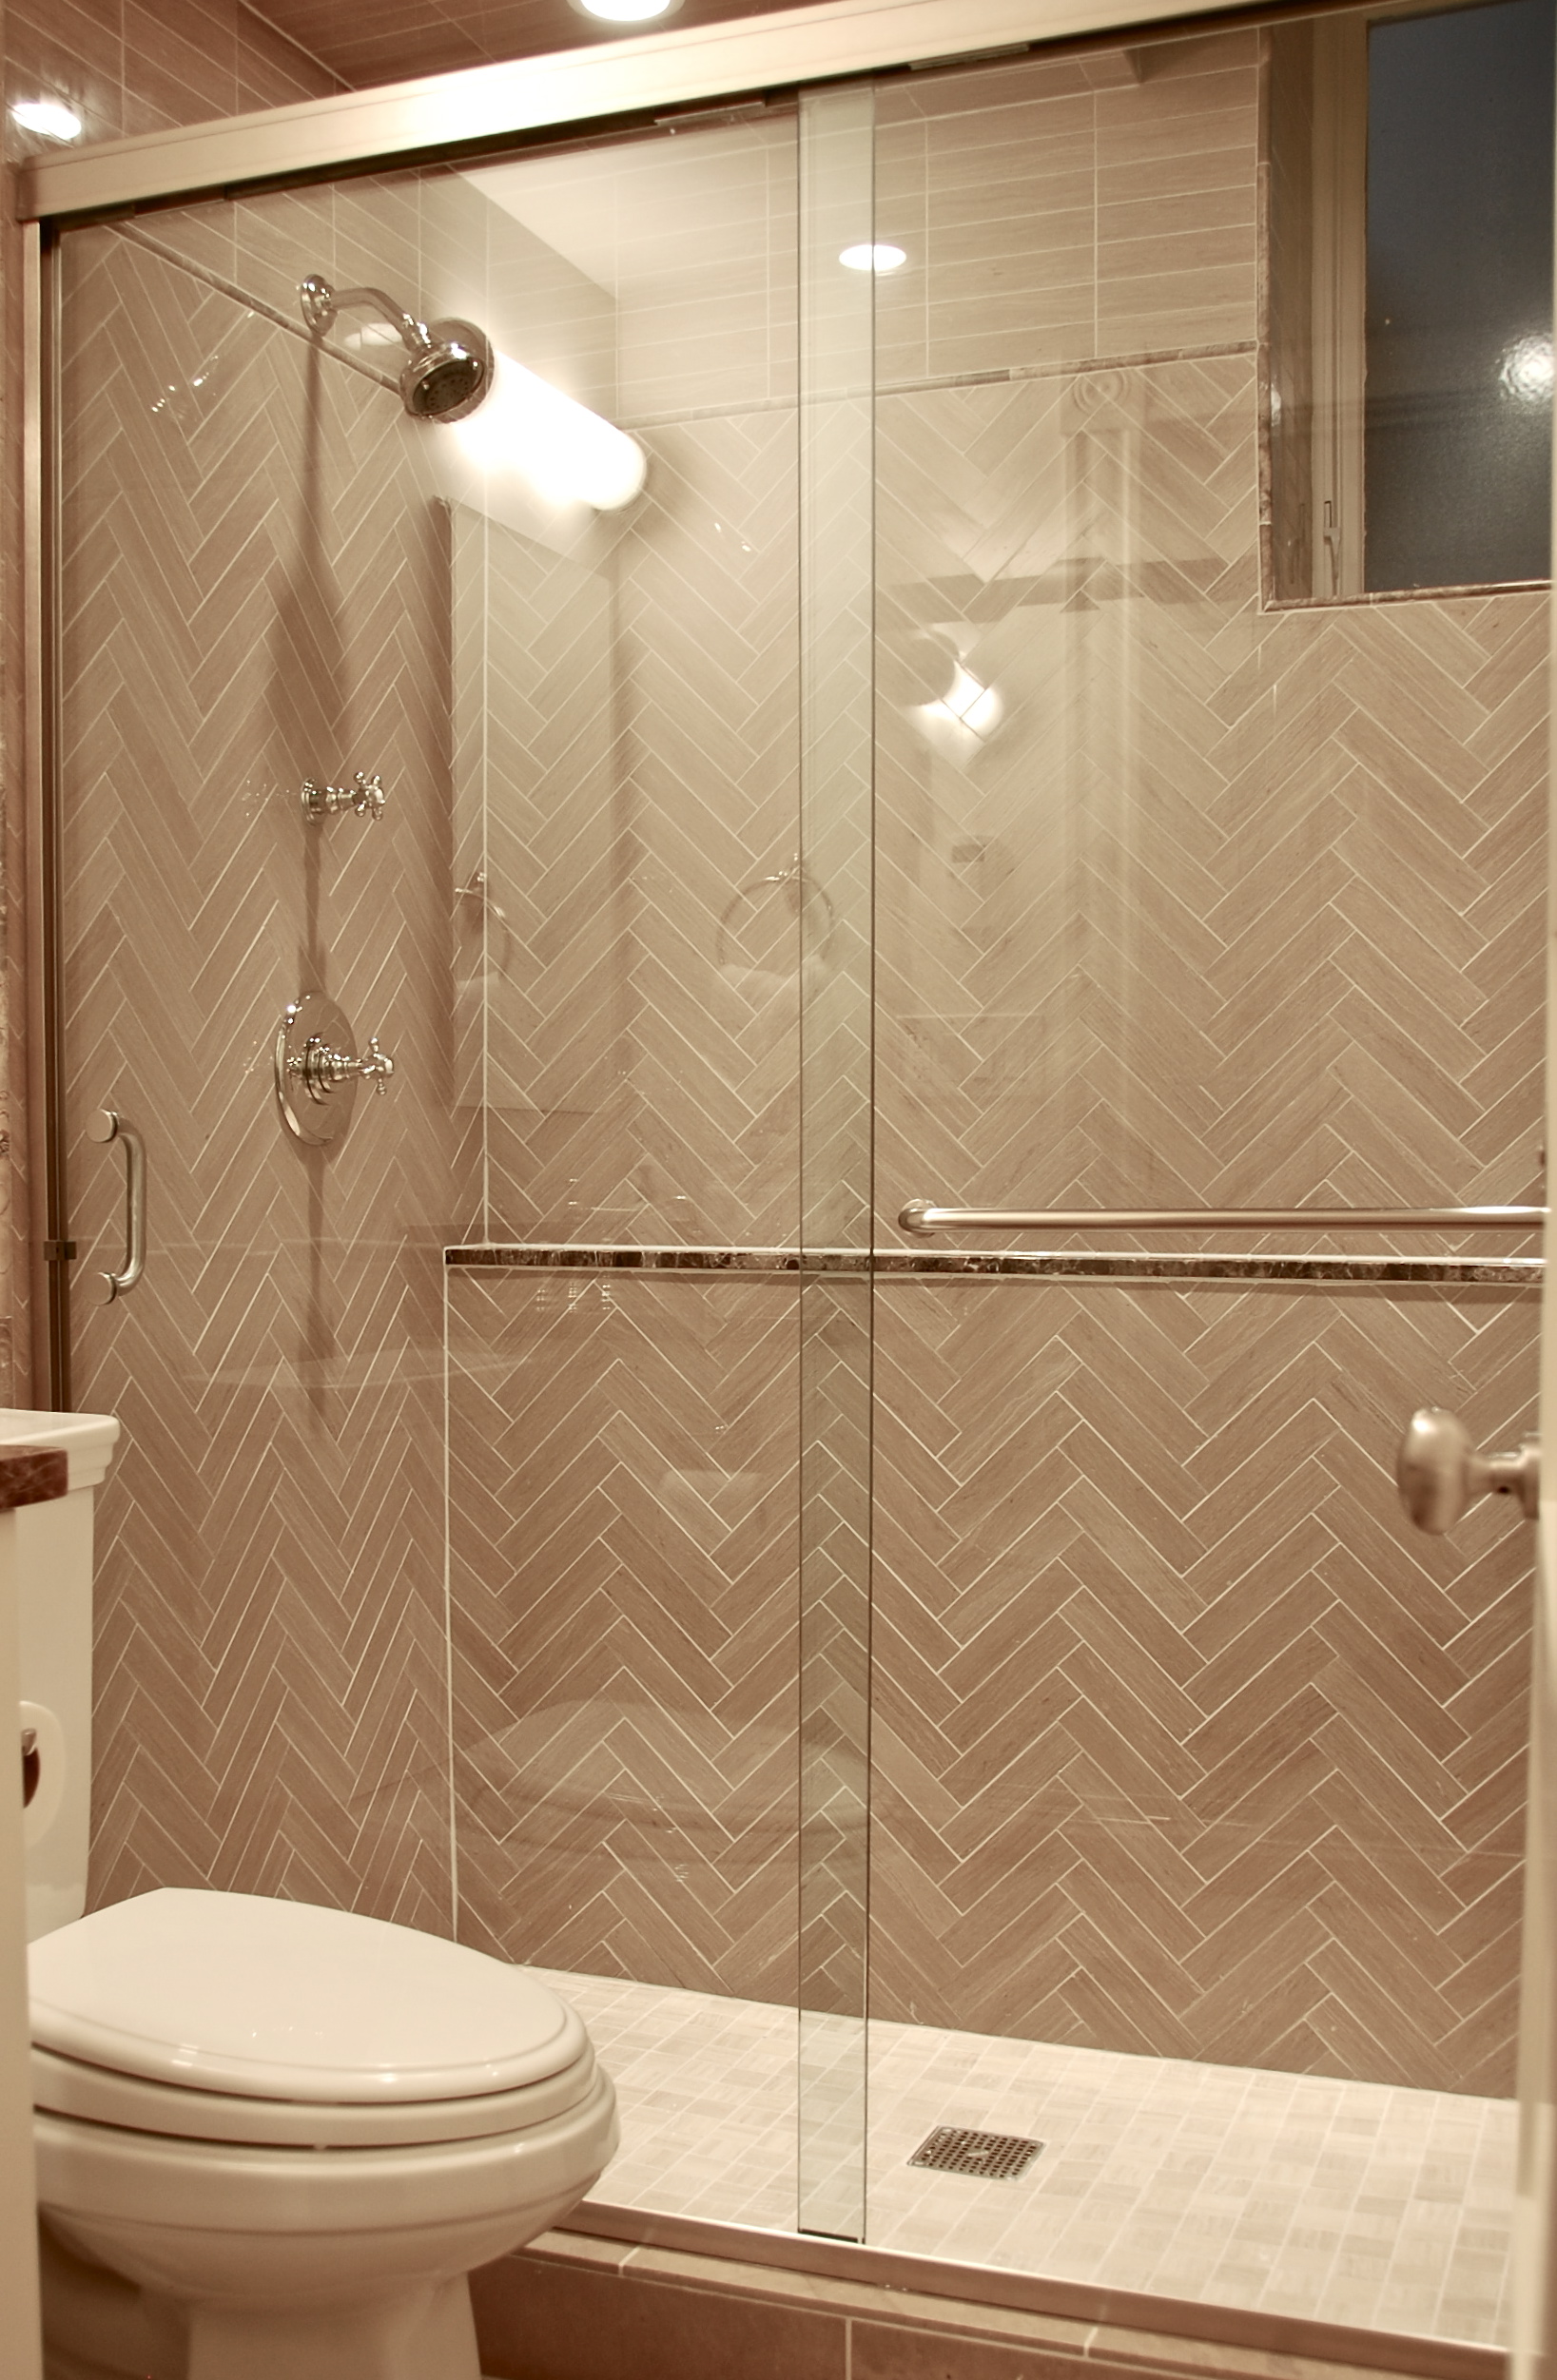 Semi-Frameless Shower Doors - Shower Doors Chicago | Mirrors | Custom ...